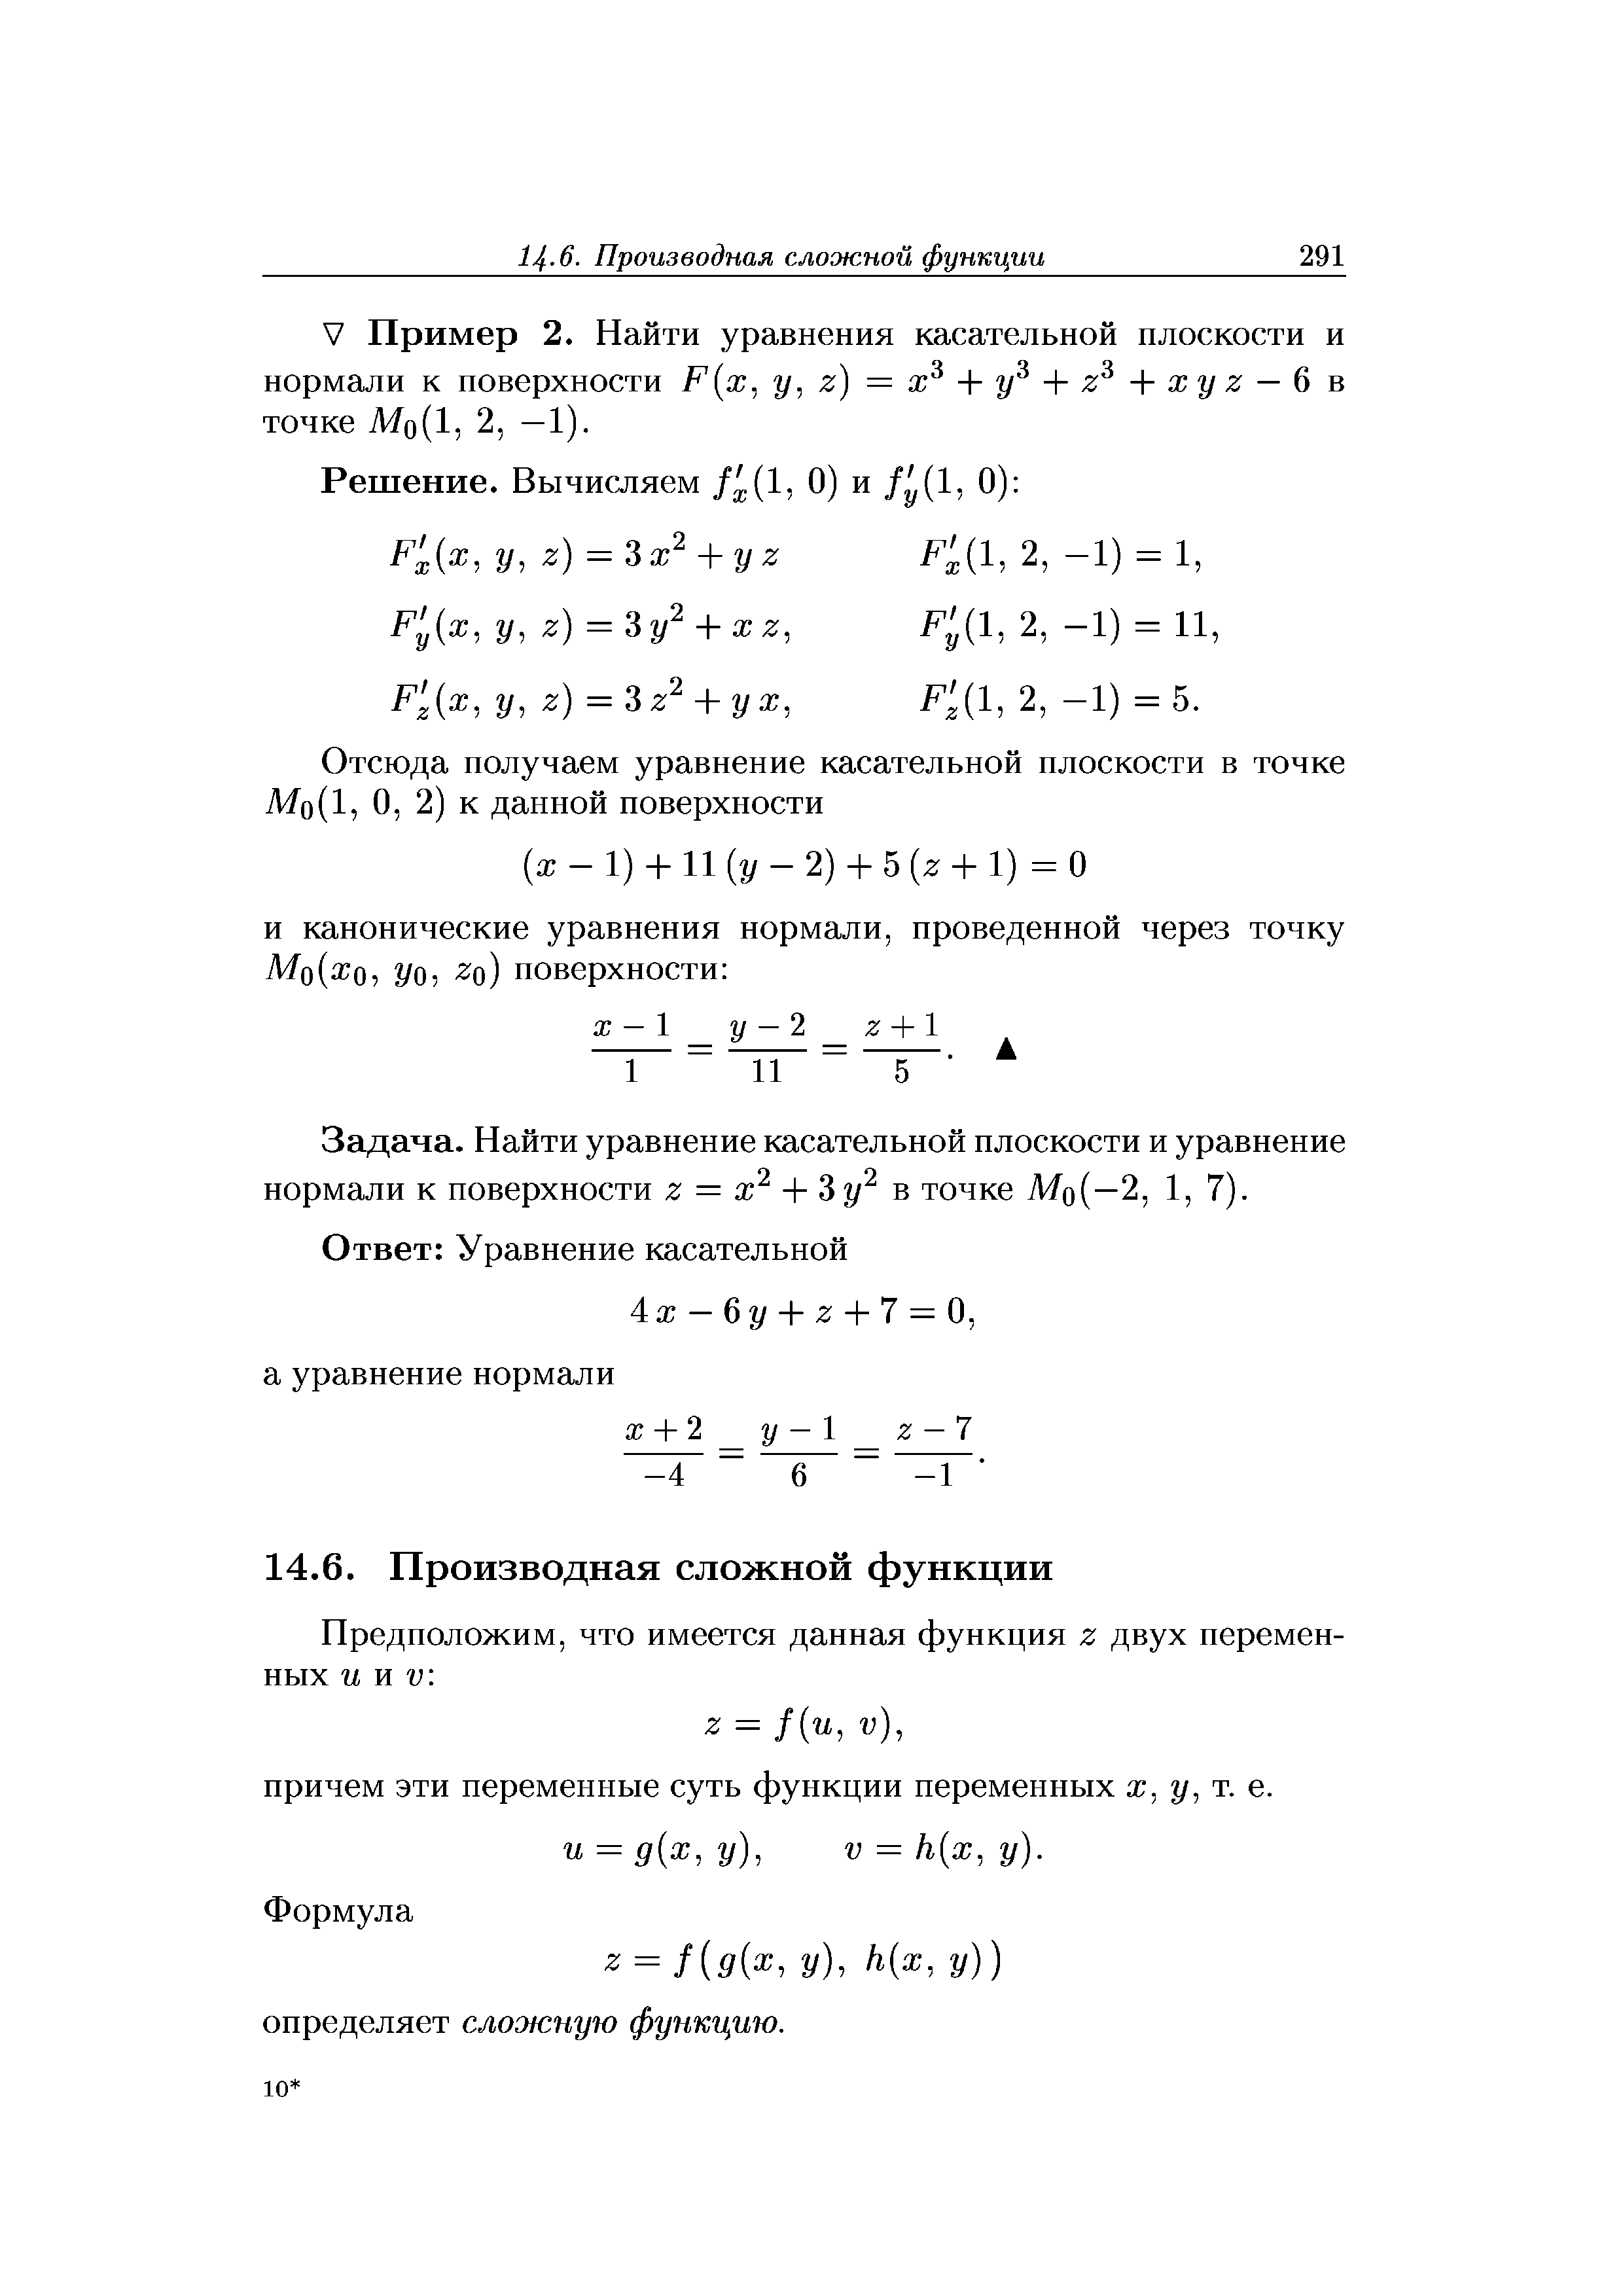 Задача. Найти уравнение касательной плоскости и уравнение нормали к поверхности z = х2 + Зу2 в точке MQ(—2, 1, 7).
